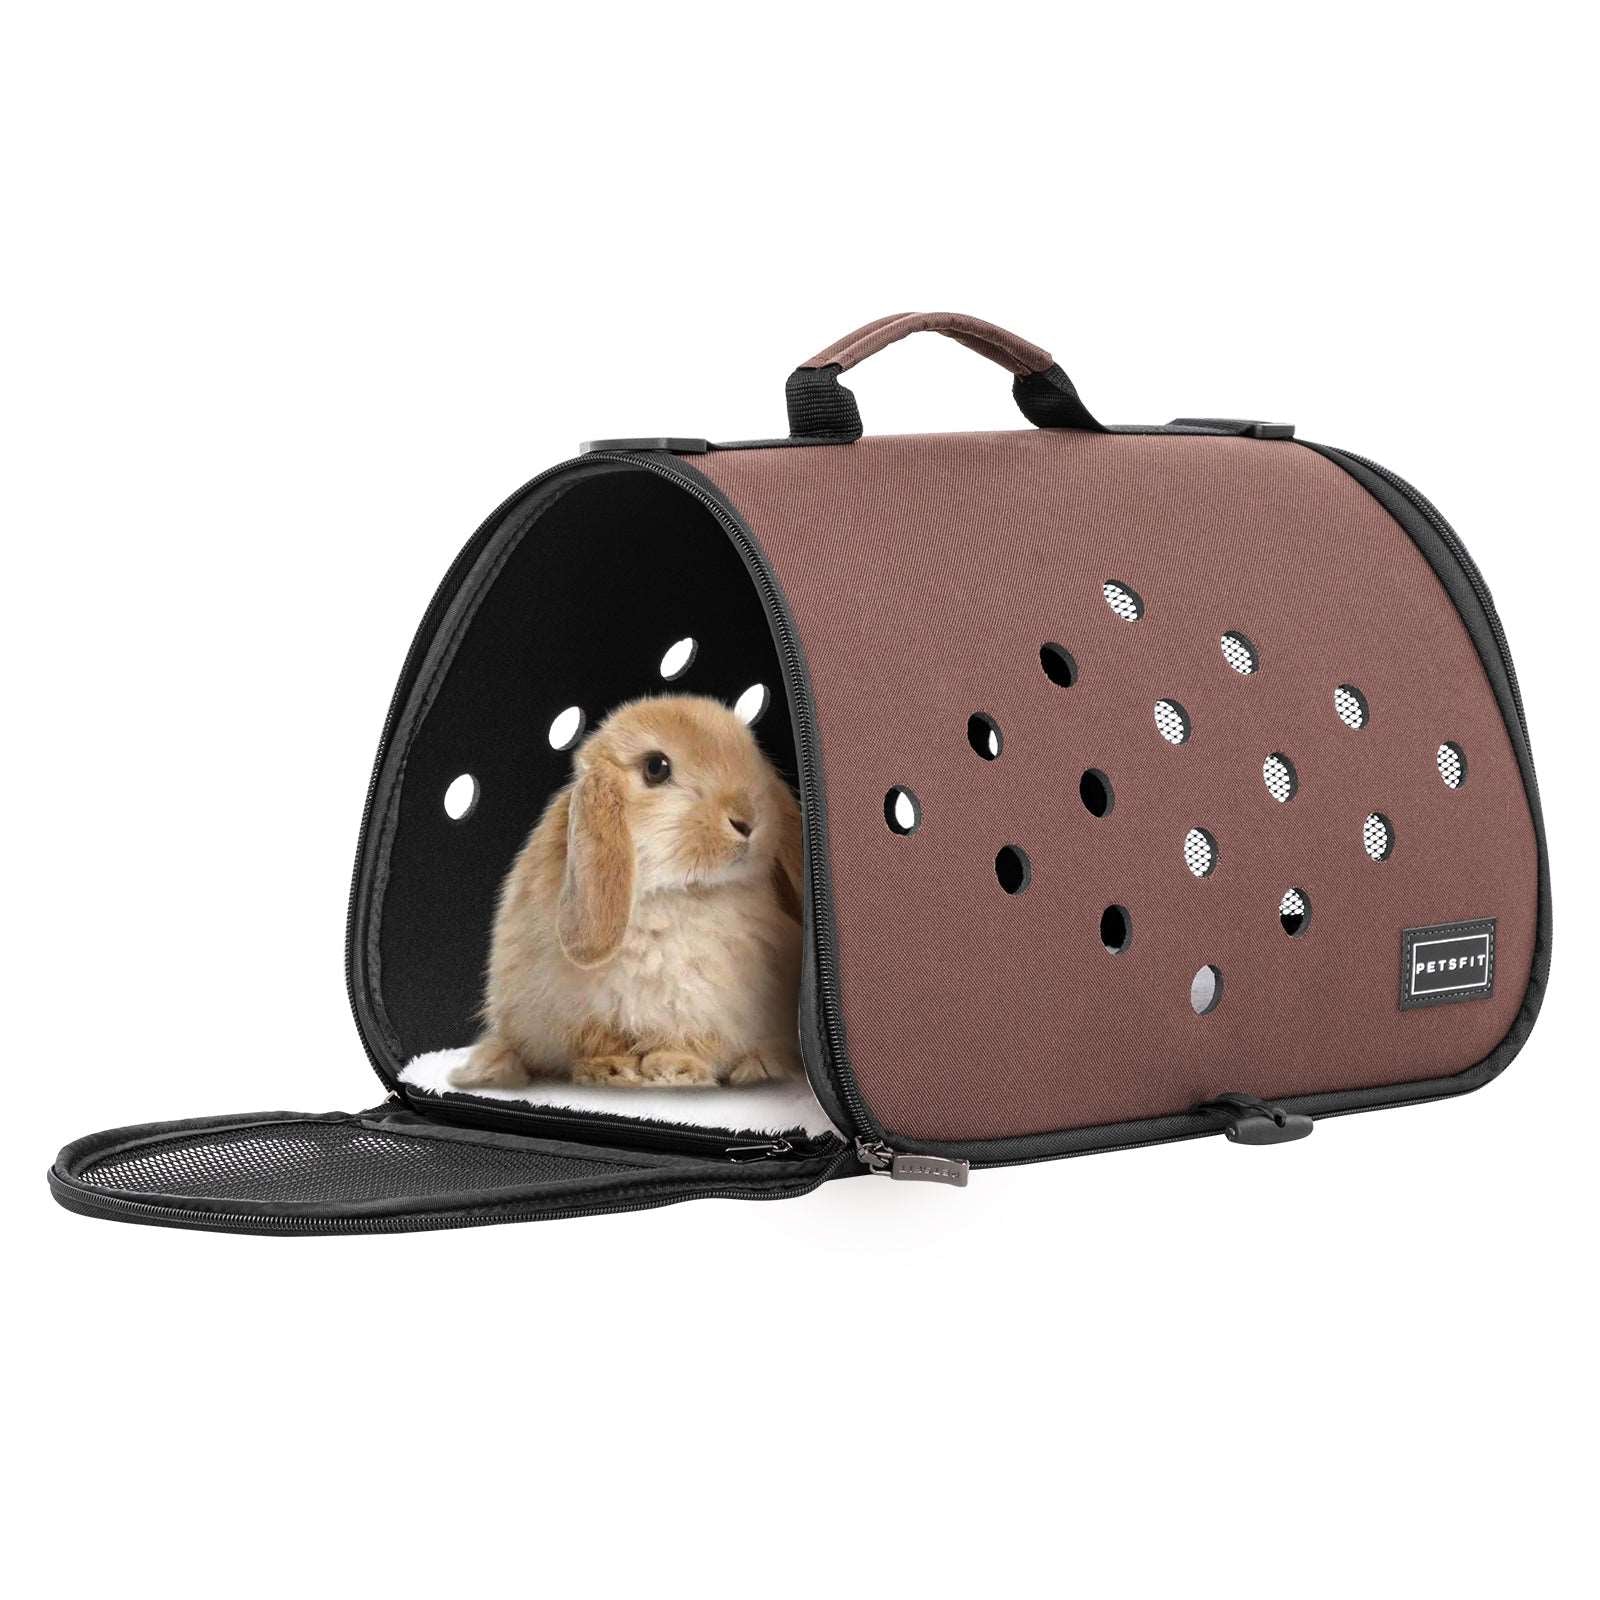 Petsfit-Portable-Rabbit-Carrier-with-Ventilation-Holes-01